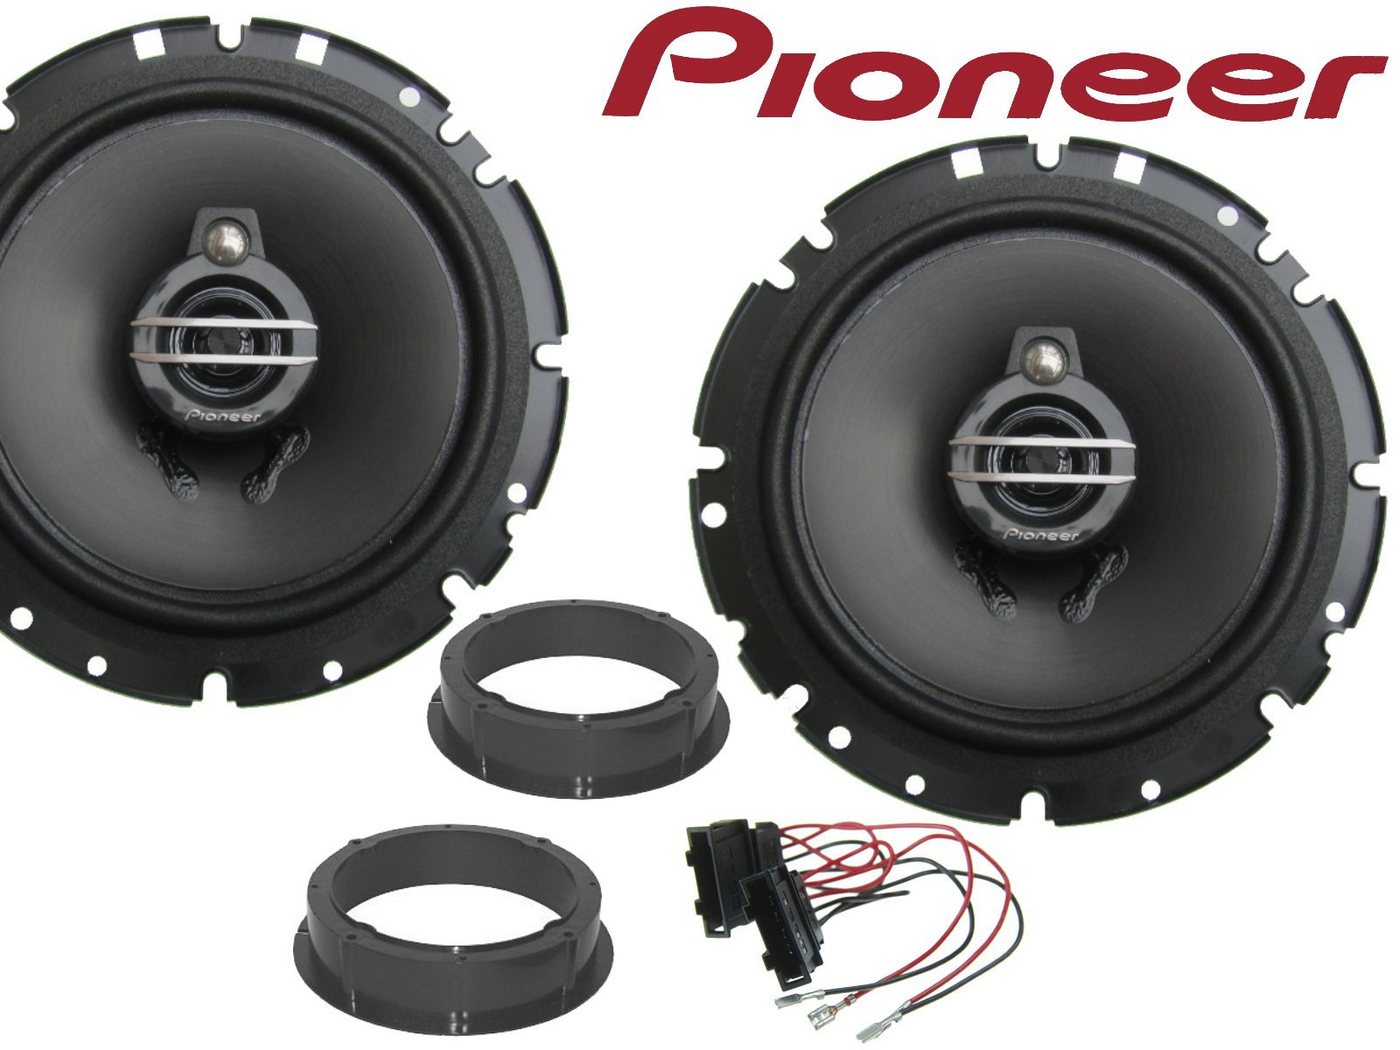 DSX Pioneer 3wege passend für VW Passat B6 B7 B8 ab 20 Auto-Lautsprecher (40 W) von DSX